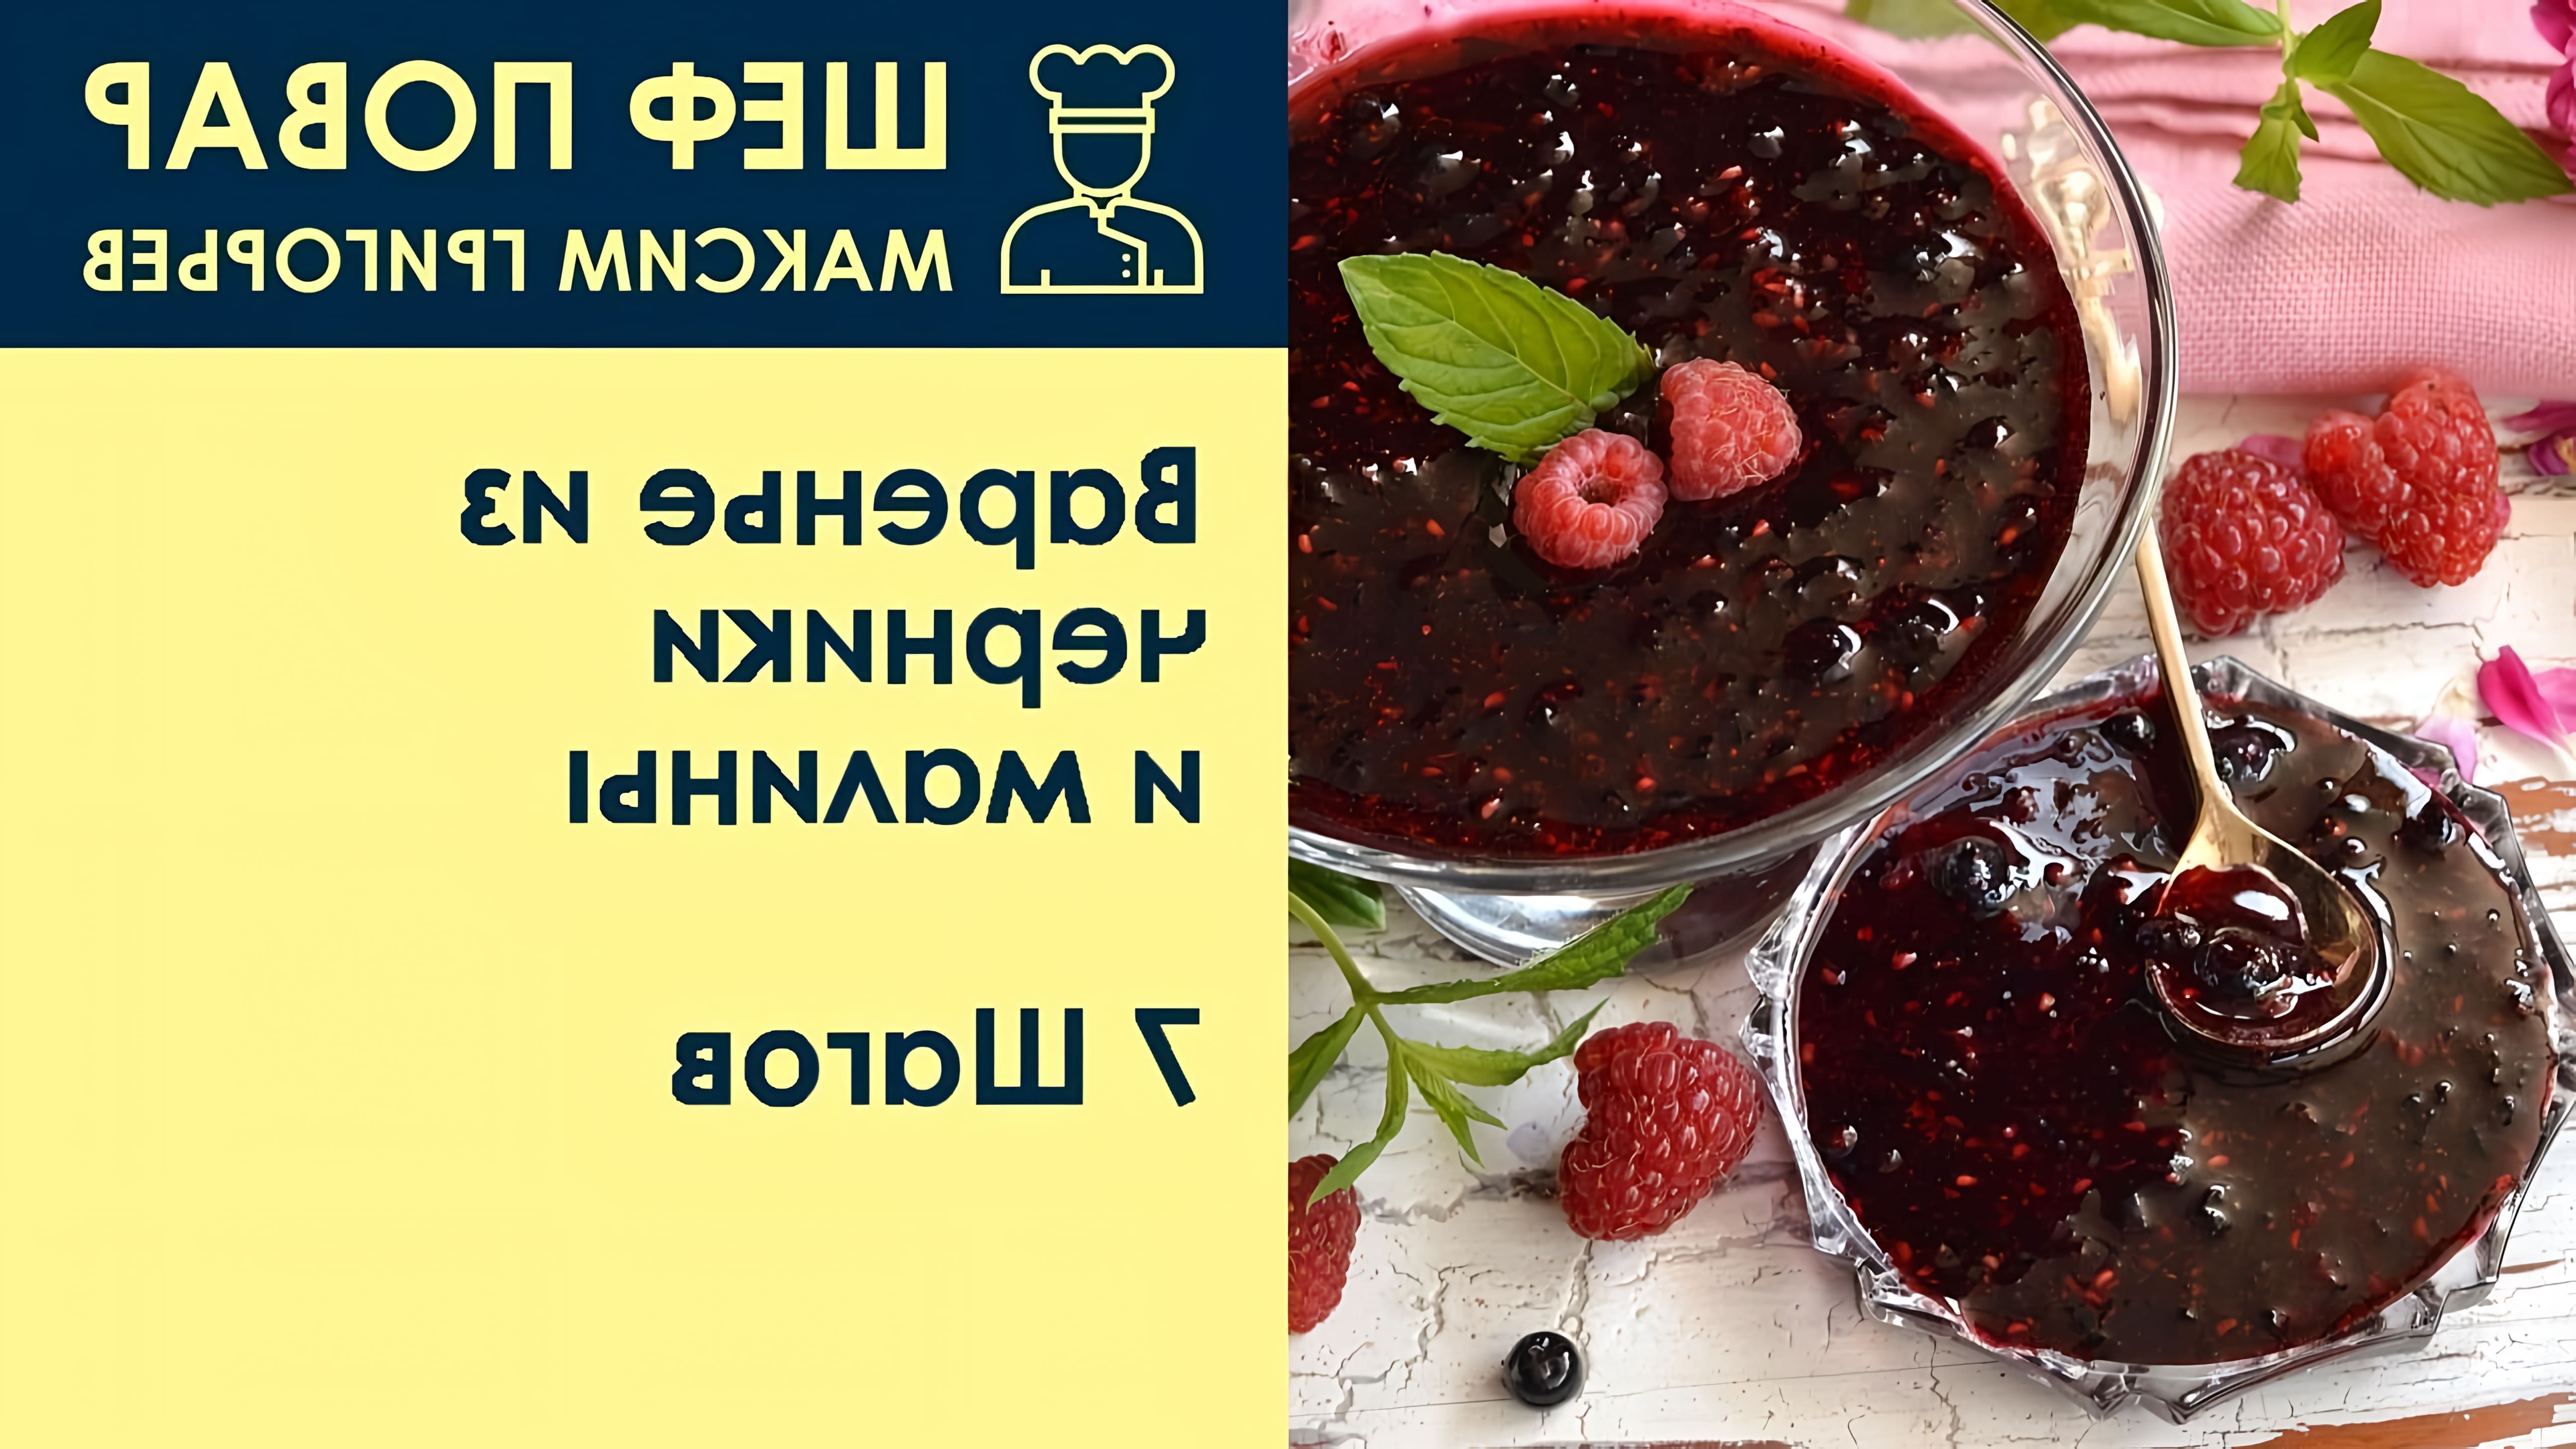 В этом видео шеф-повар Максим Григорьев показывает, как приготовить варенье из черники и малины